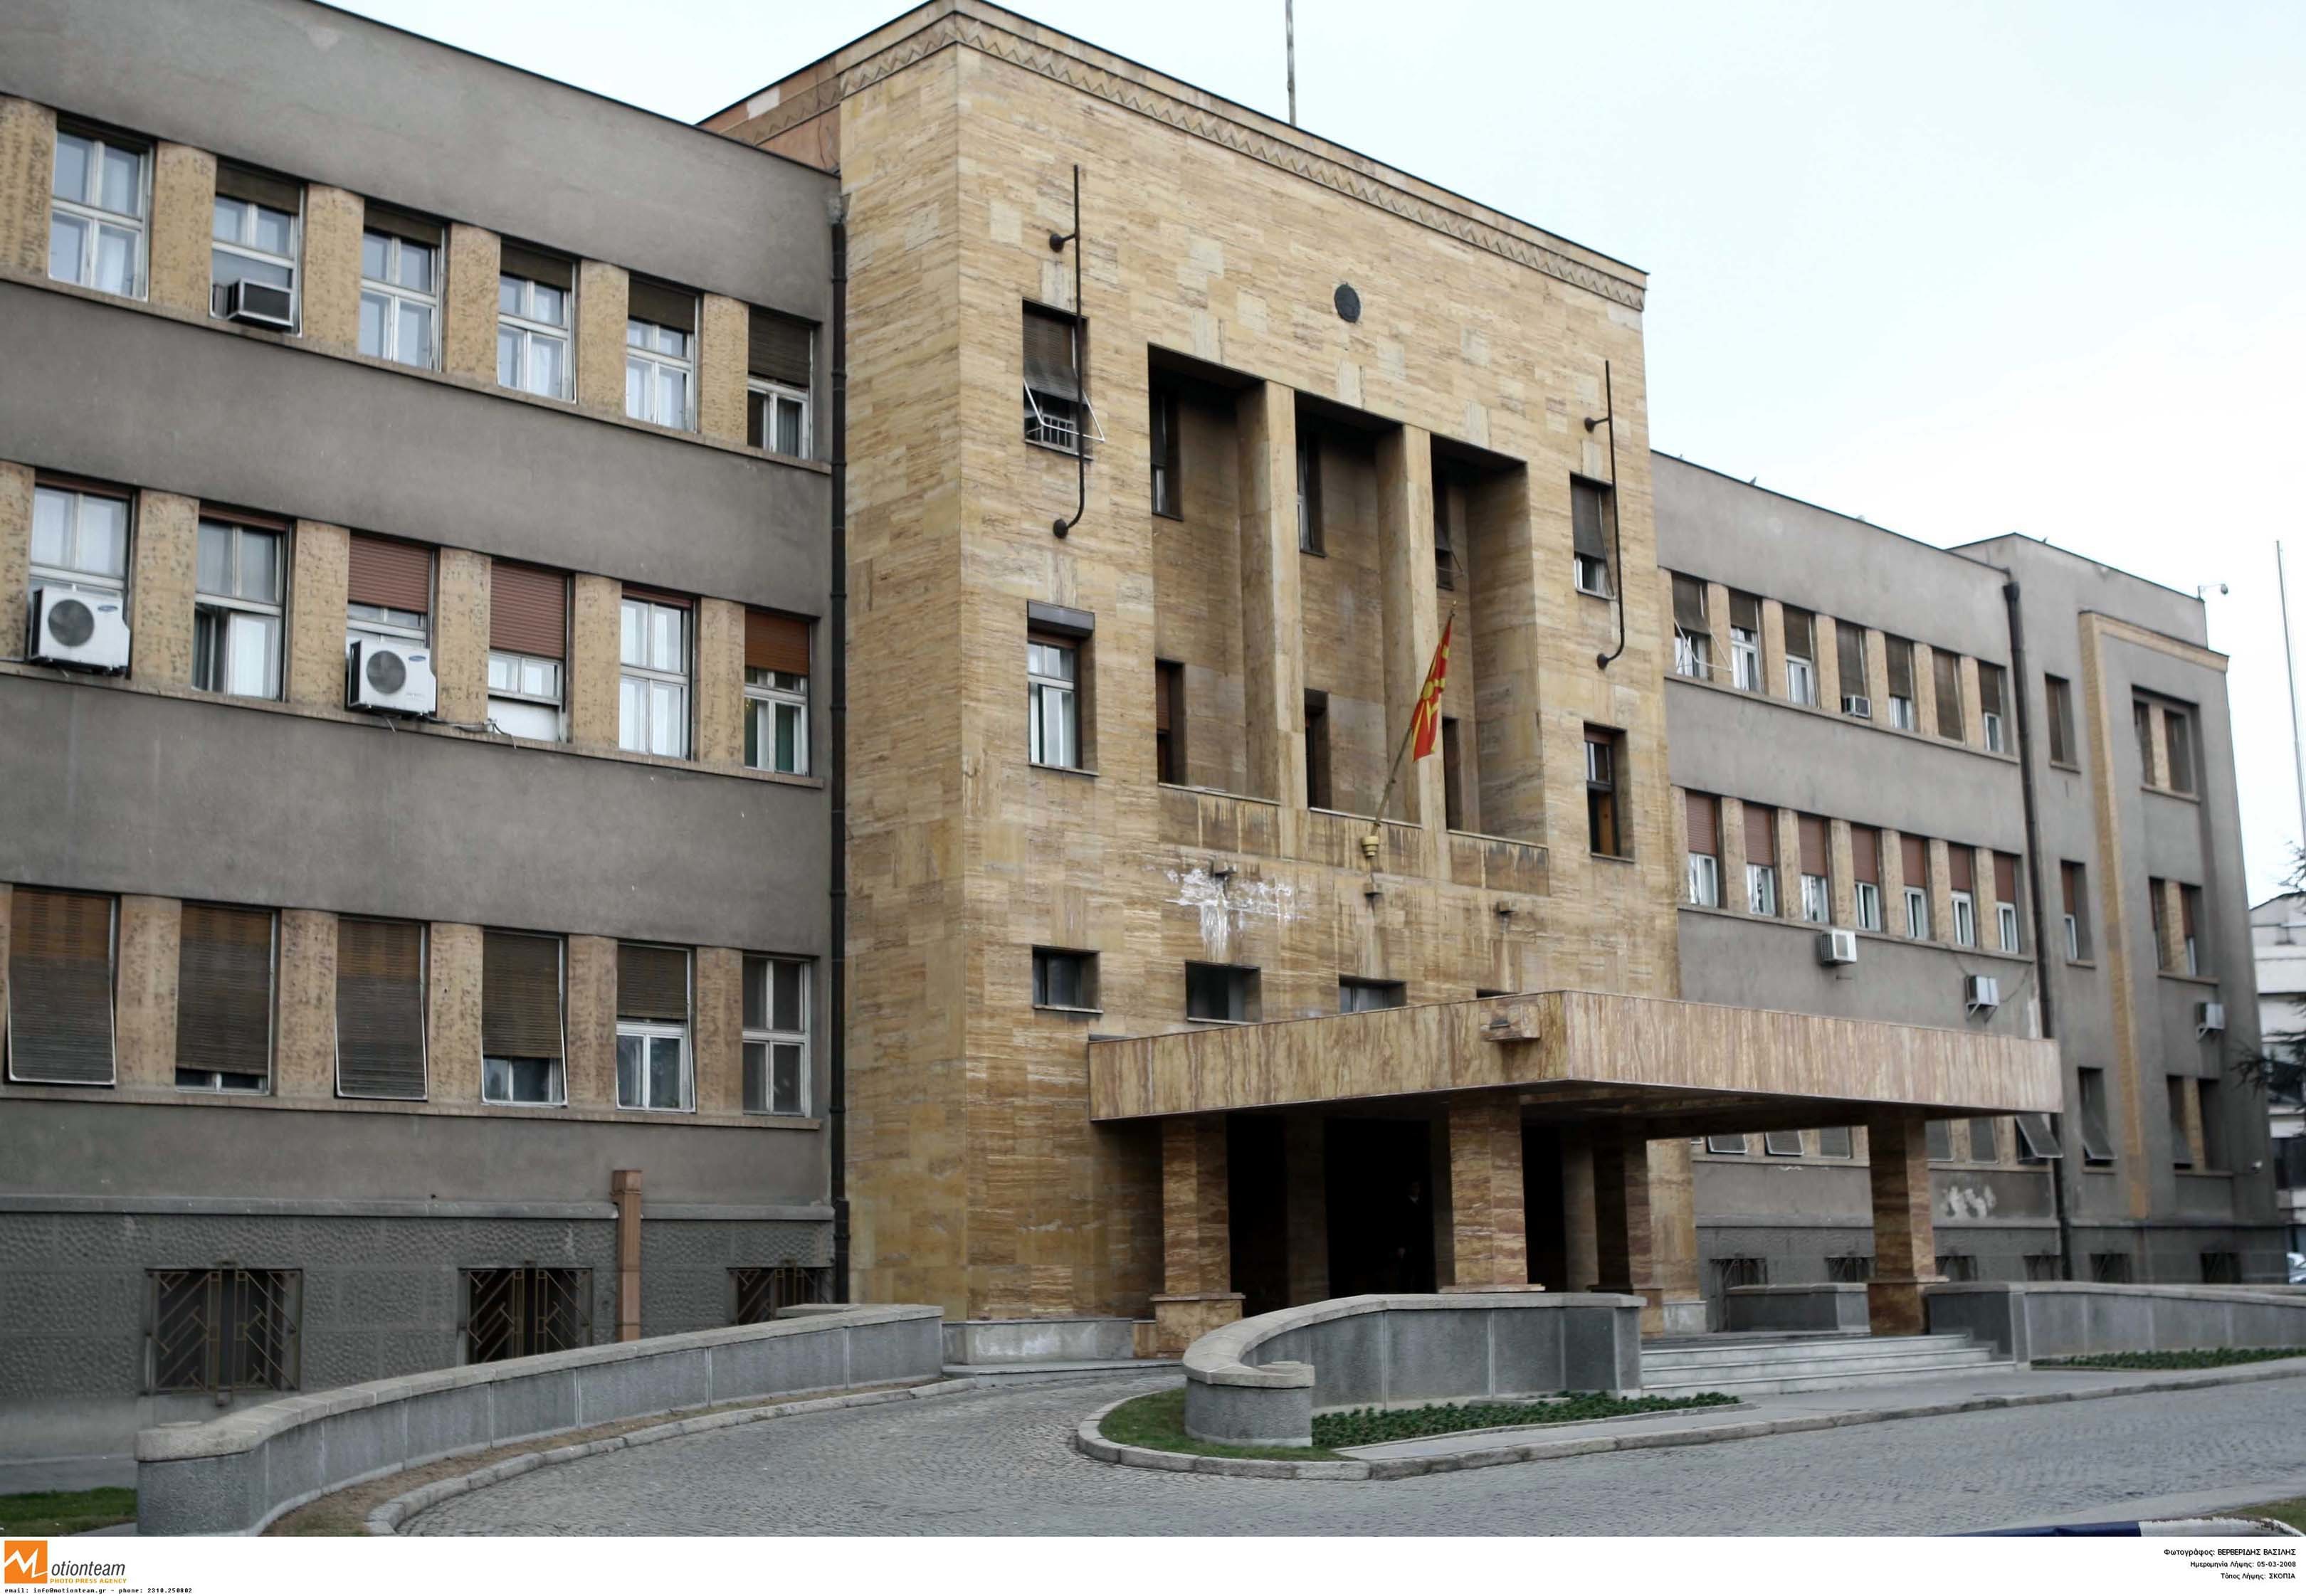 Το αλβανικό κόμμα στα Σκόπια αποκάλυψε την πρόταση Νίμιτς: Άνω Δημοκρατία της Μακεδονίας